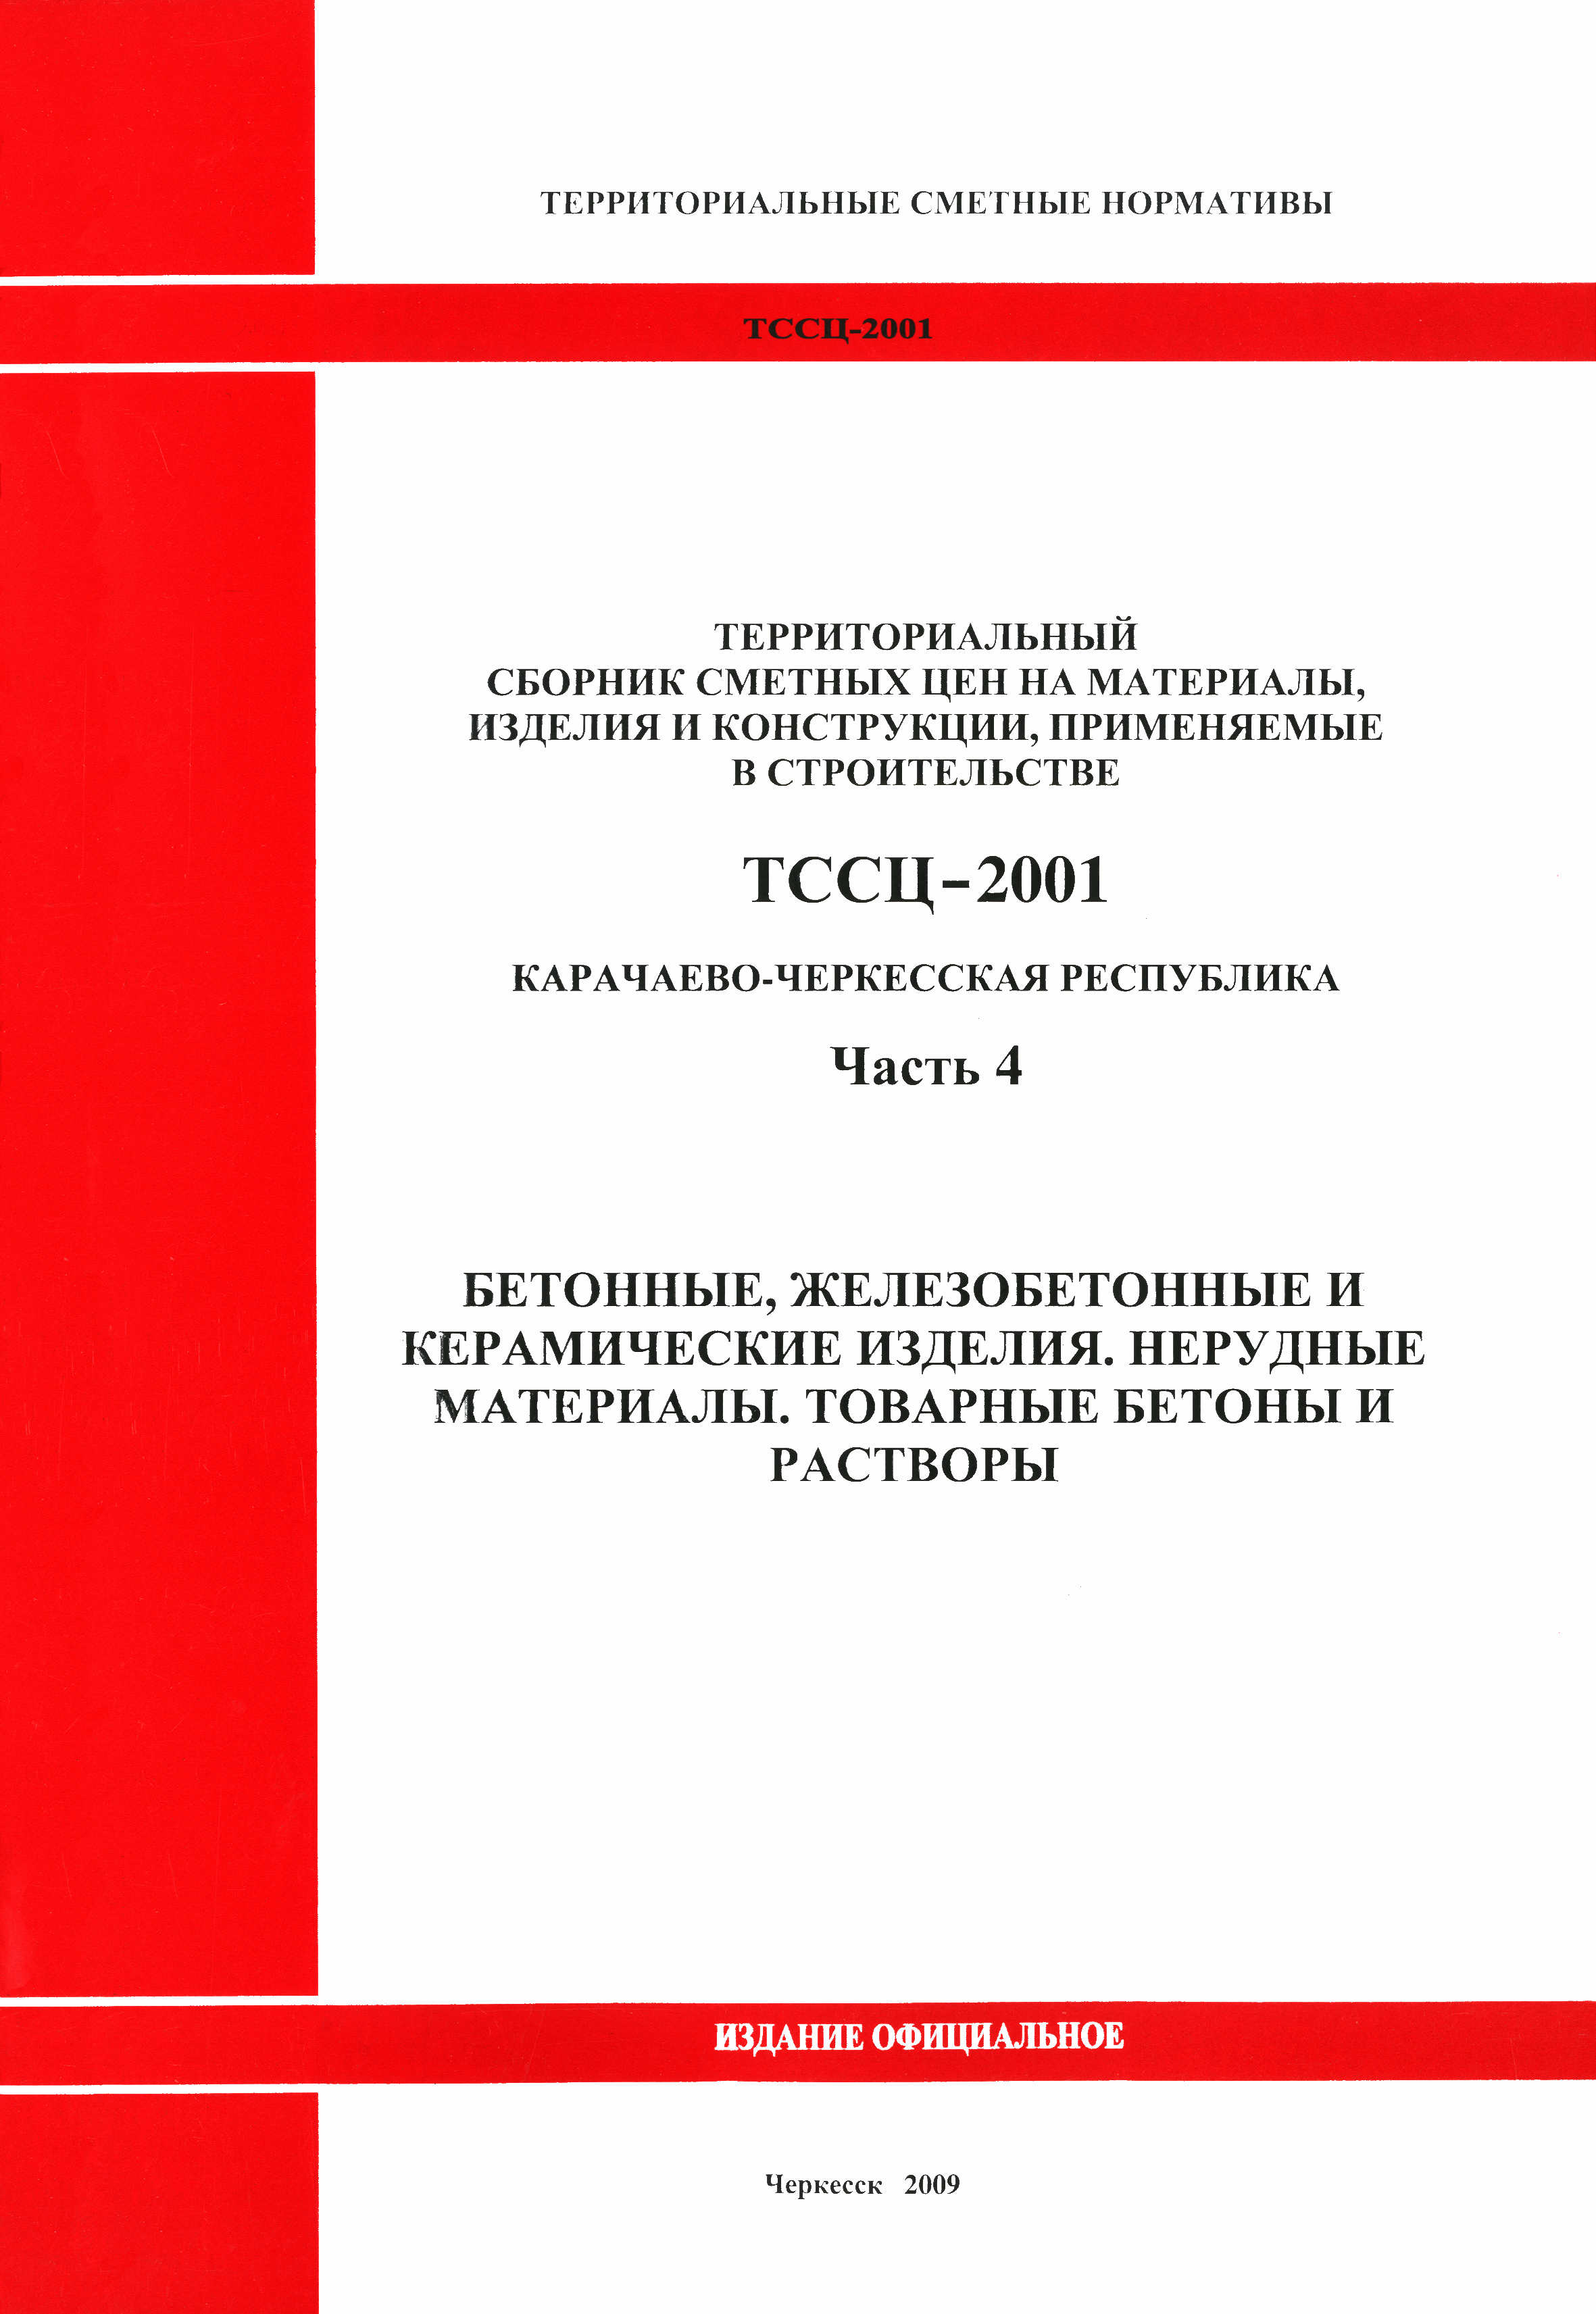 ТССЦ Карачаево-Черкесская Республика 04-2001